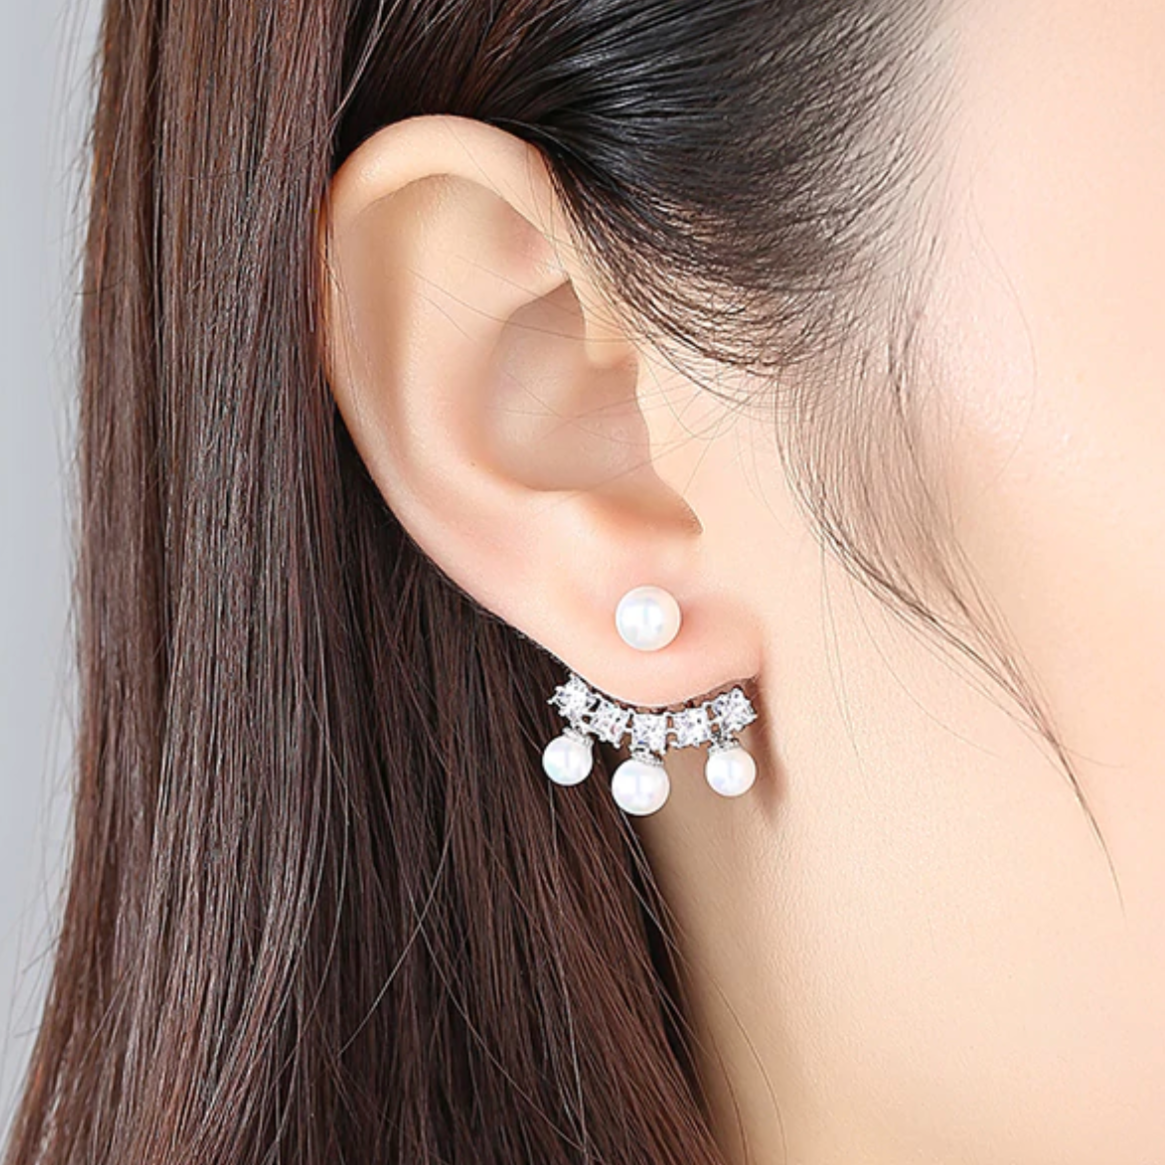 Birsfelden Earrings